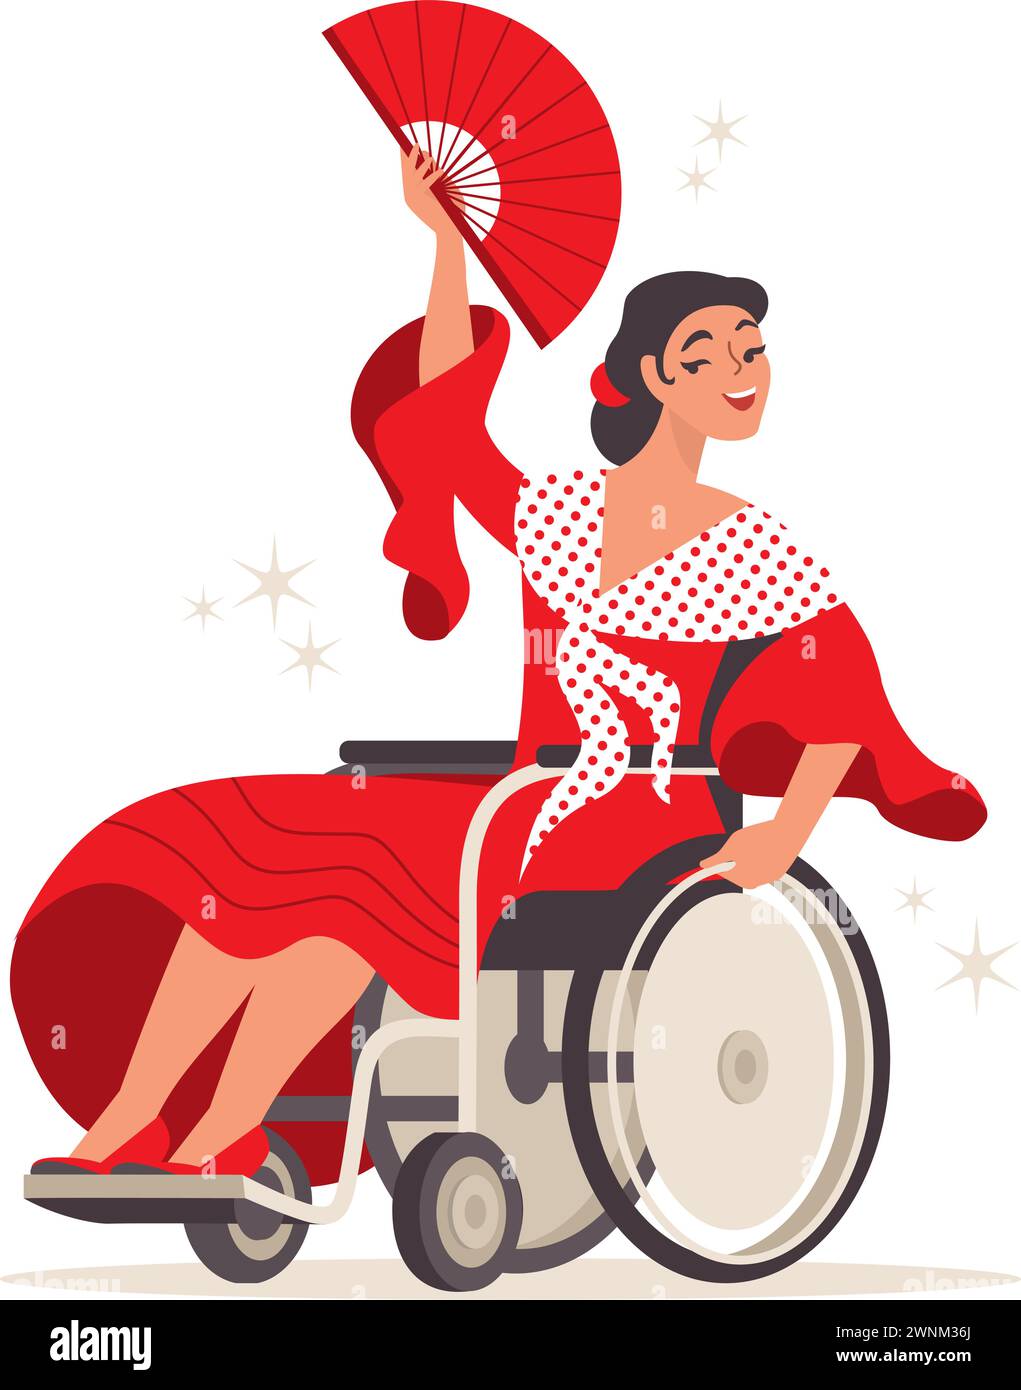 Jeune femme heureuse sur une danse flamenco dansant en fauteuil roulant portant une robe espagnole traditionnelle. Danse inclusive. Caractère vectoriel plat Illustration de Vecteur